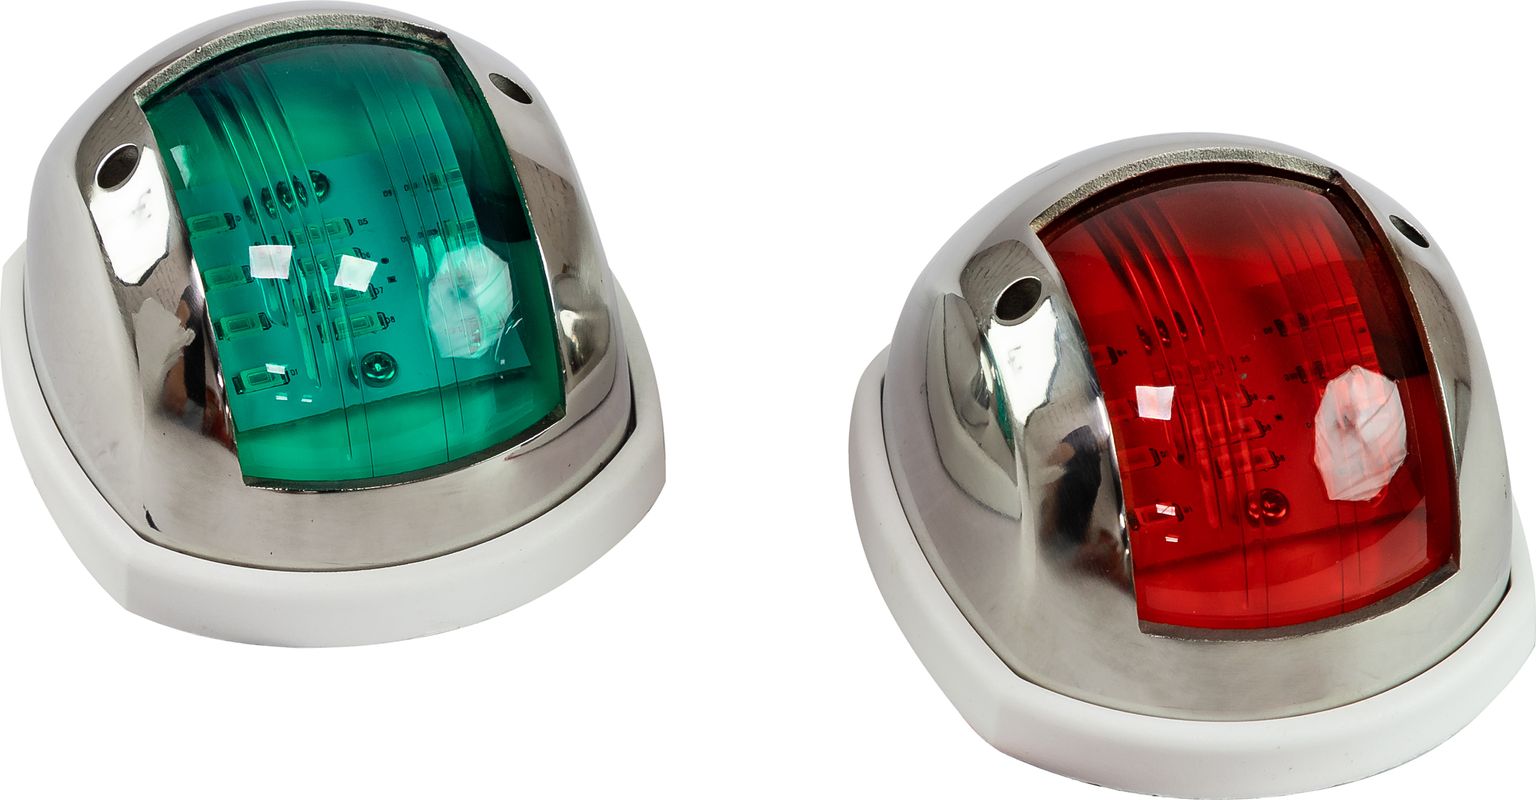 Огни ходовые 89х55 мм комплект (красный, зеленый), LED, нержавеющий корпус LPSDLPTLED0289 огни ходовые светодиодные зелёный красный нержавеющий корпус комплект c91018